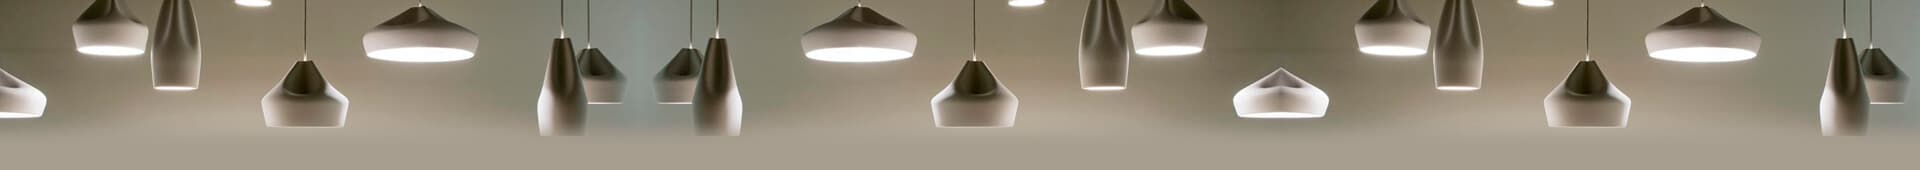 Gran variedad de lámparas